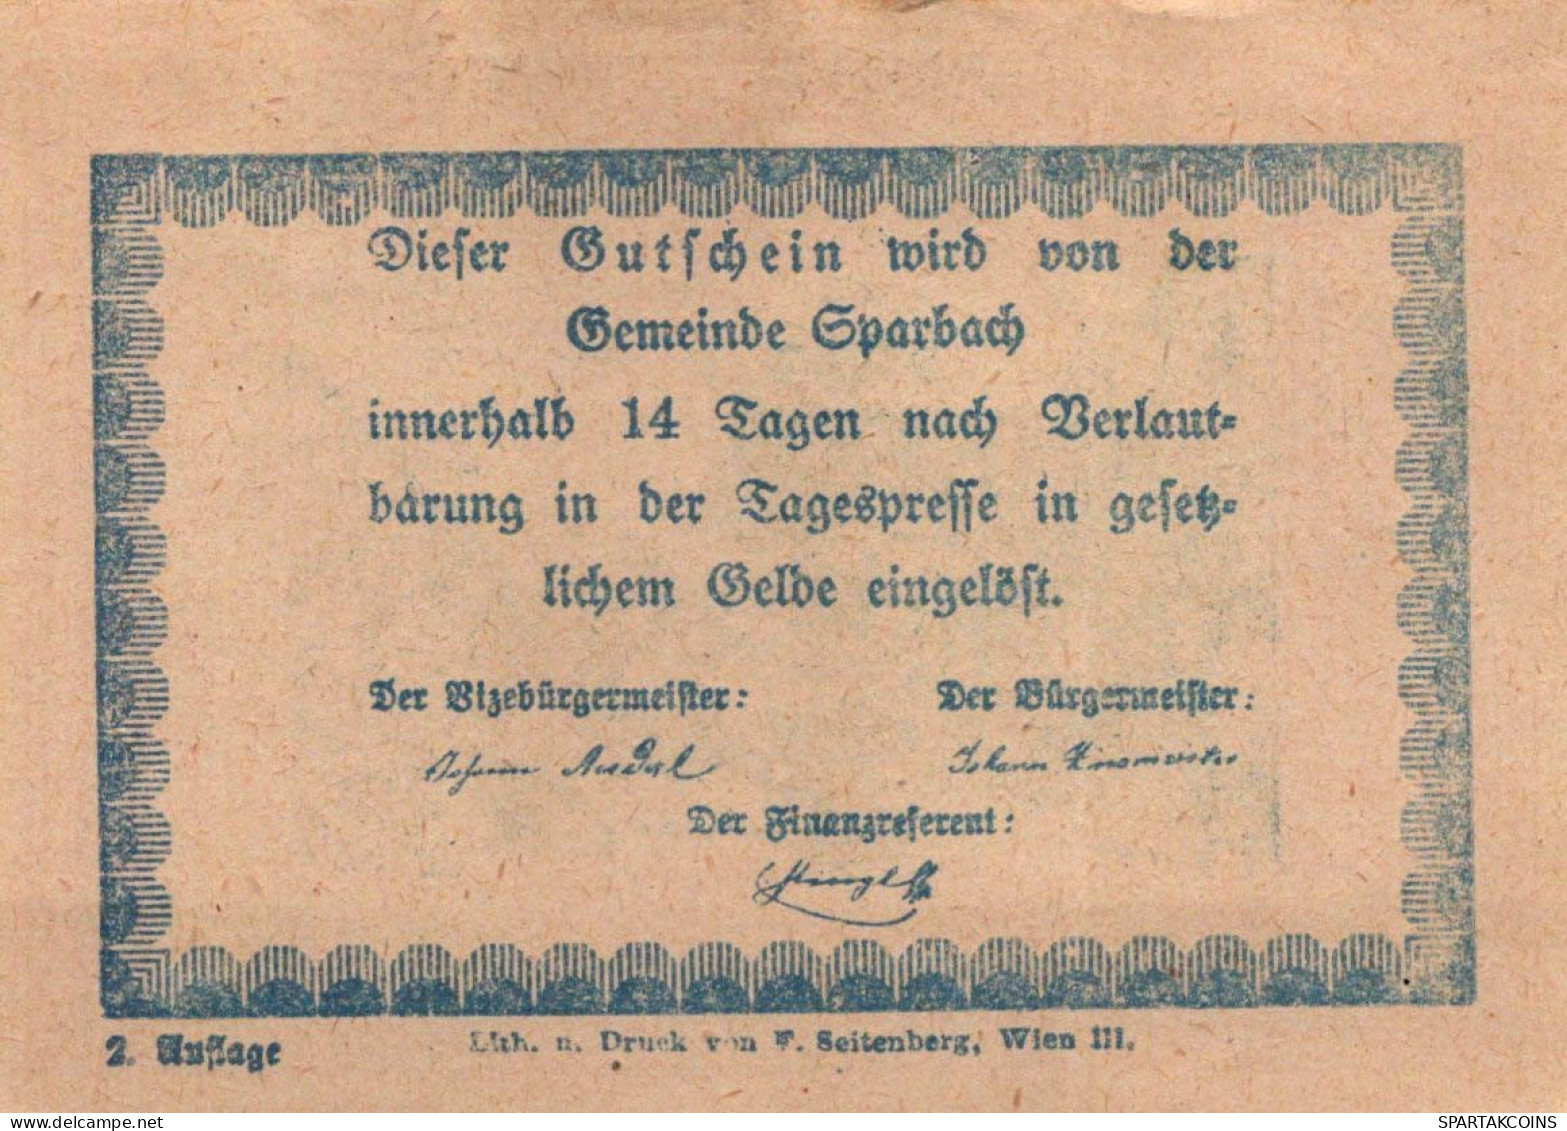 80 HELLER Stadt Sparbach Niedrigeren Österreich Notgeld Papiergeld Banknote #PG996 - [11] Emissioni Locali